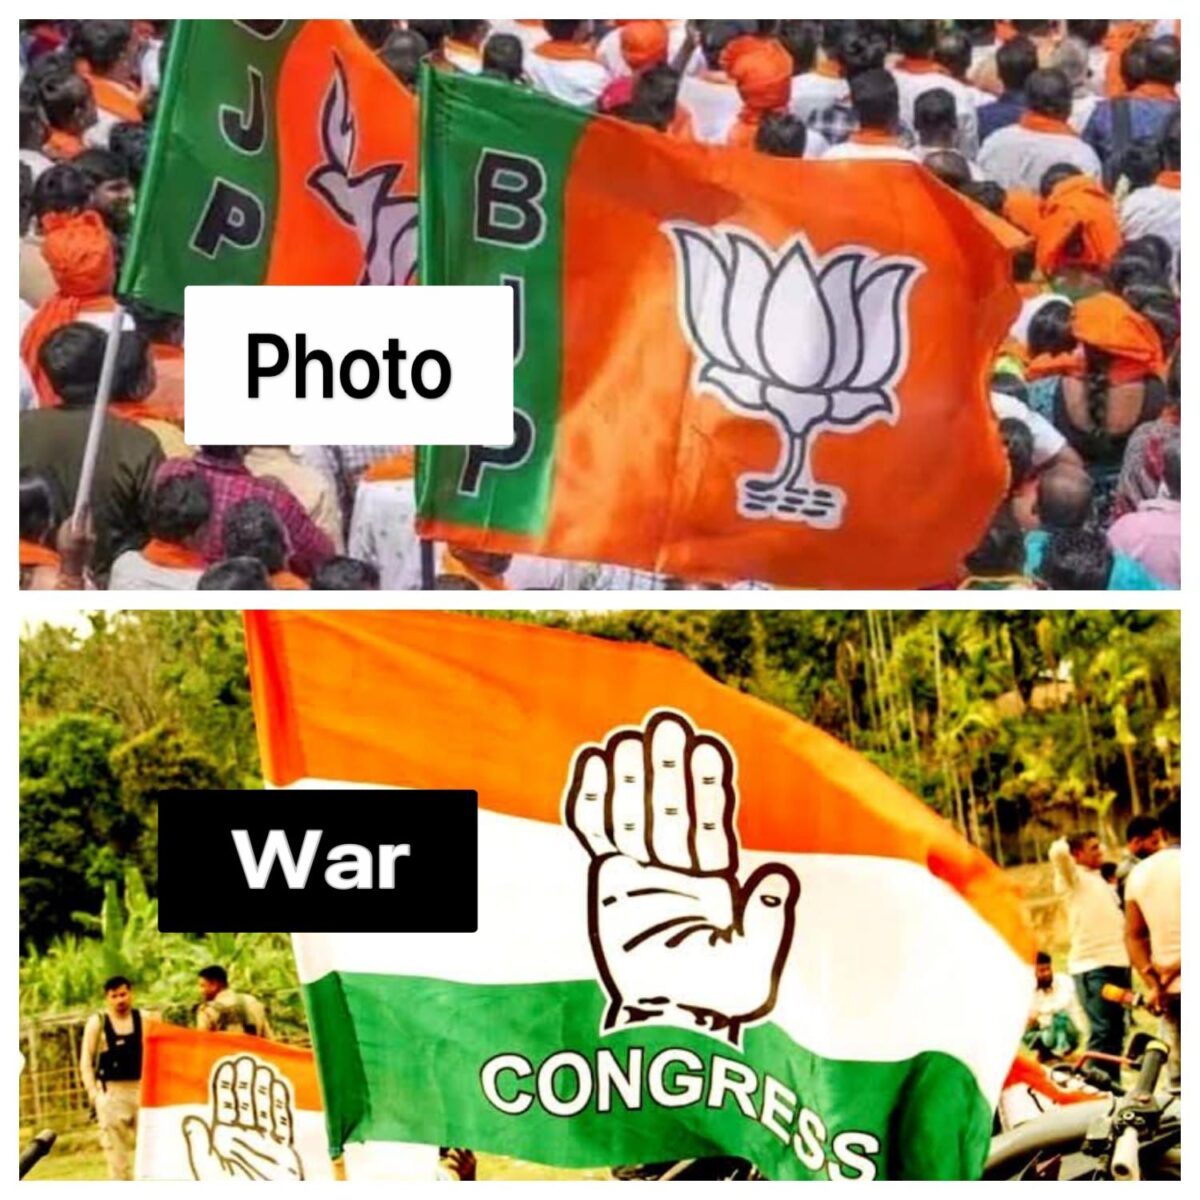 BJP-Congress Photo War : बीजेपी-कांग्रेस में अब फोटो के जरिए आरोप-प्रत्यारोप, राहुल-मोदी की तस्वीरों पर जंग